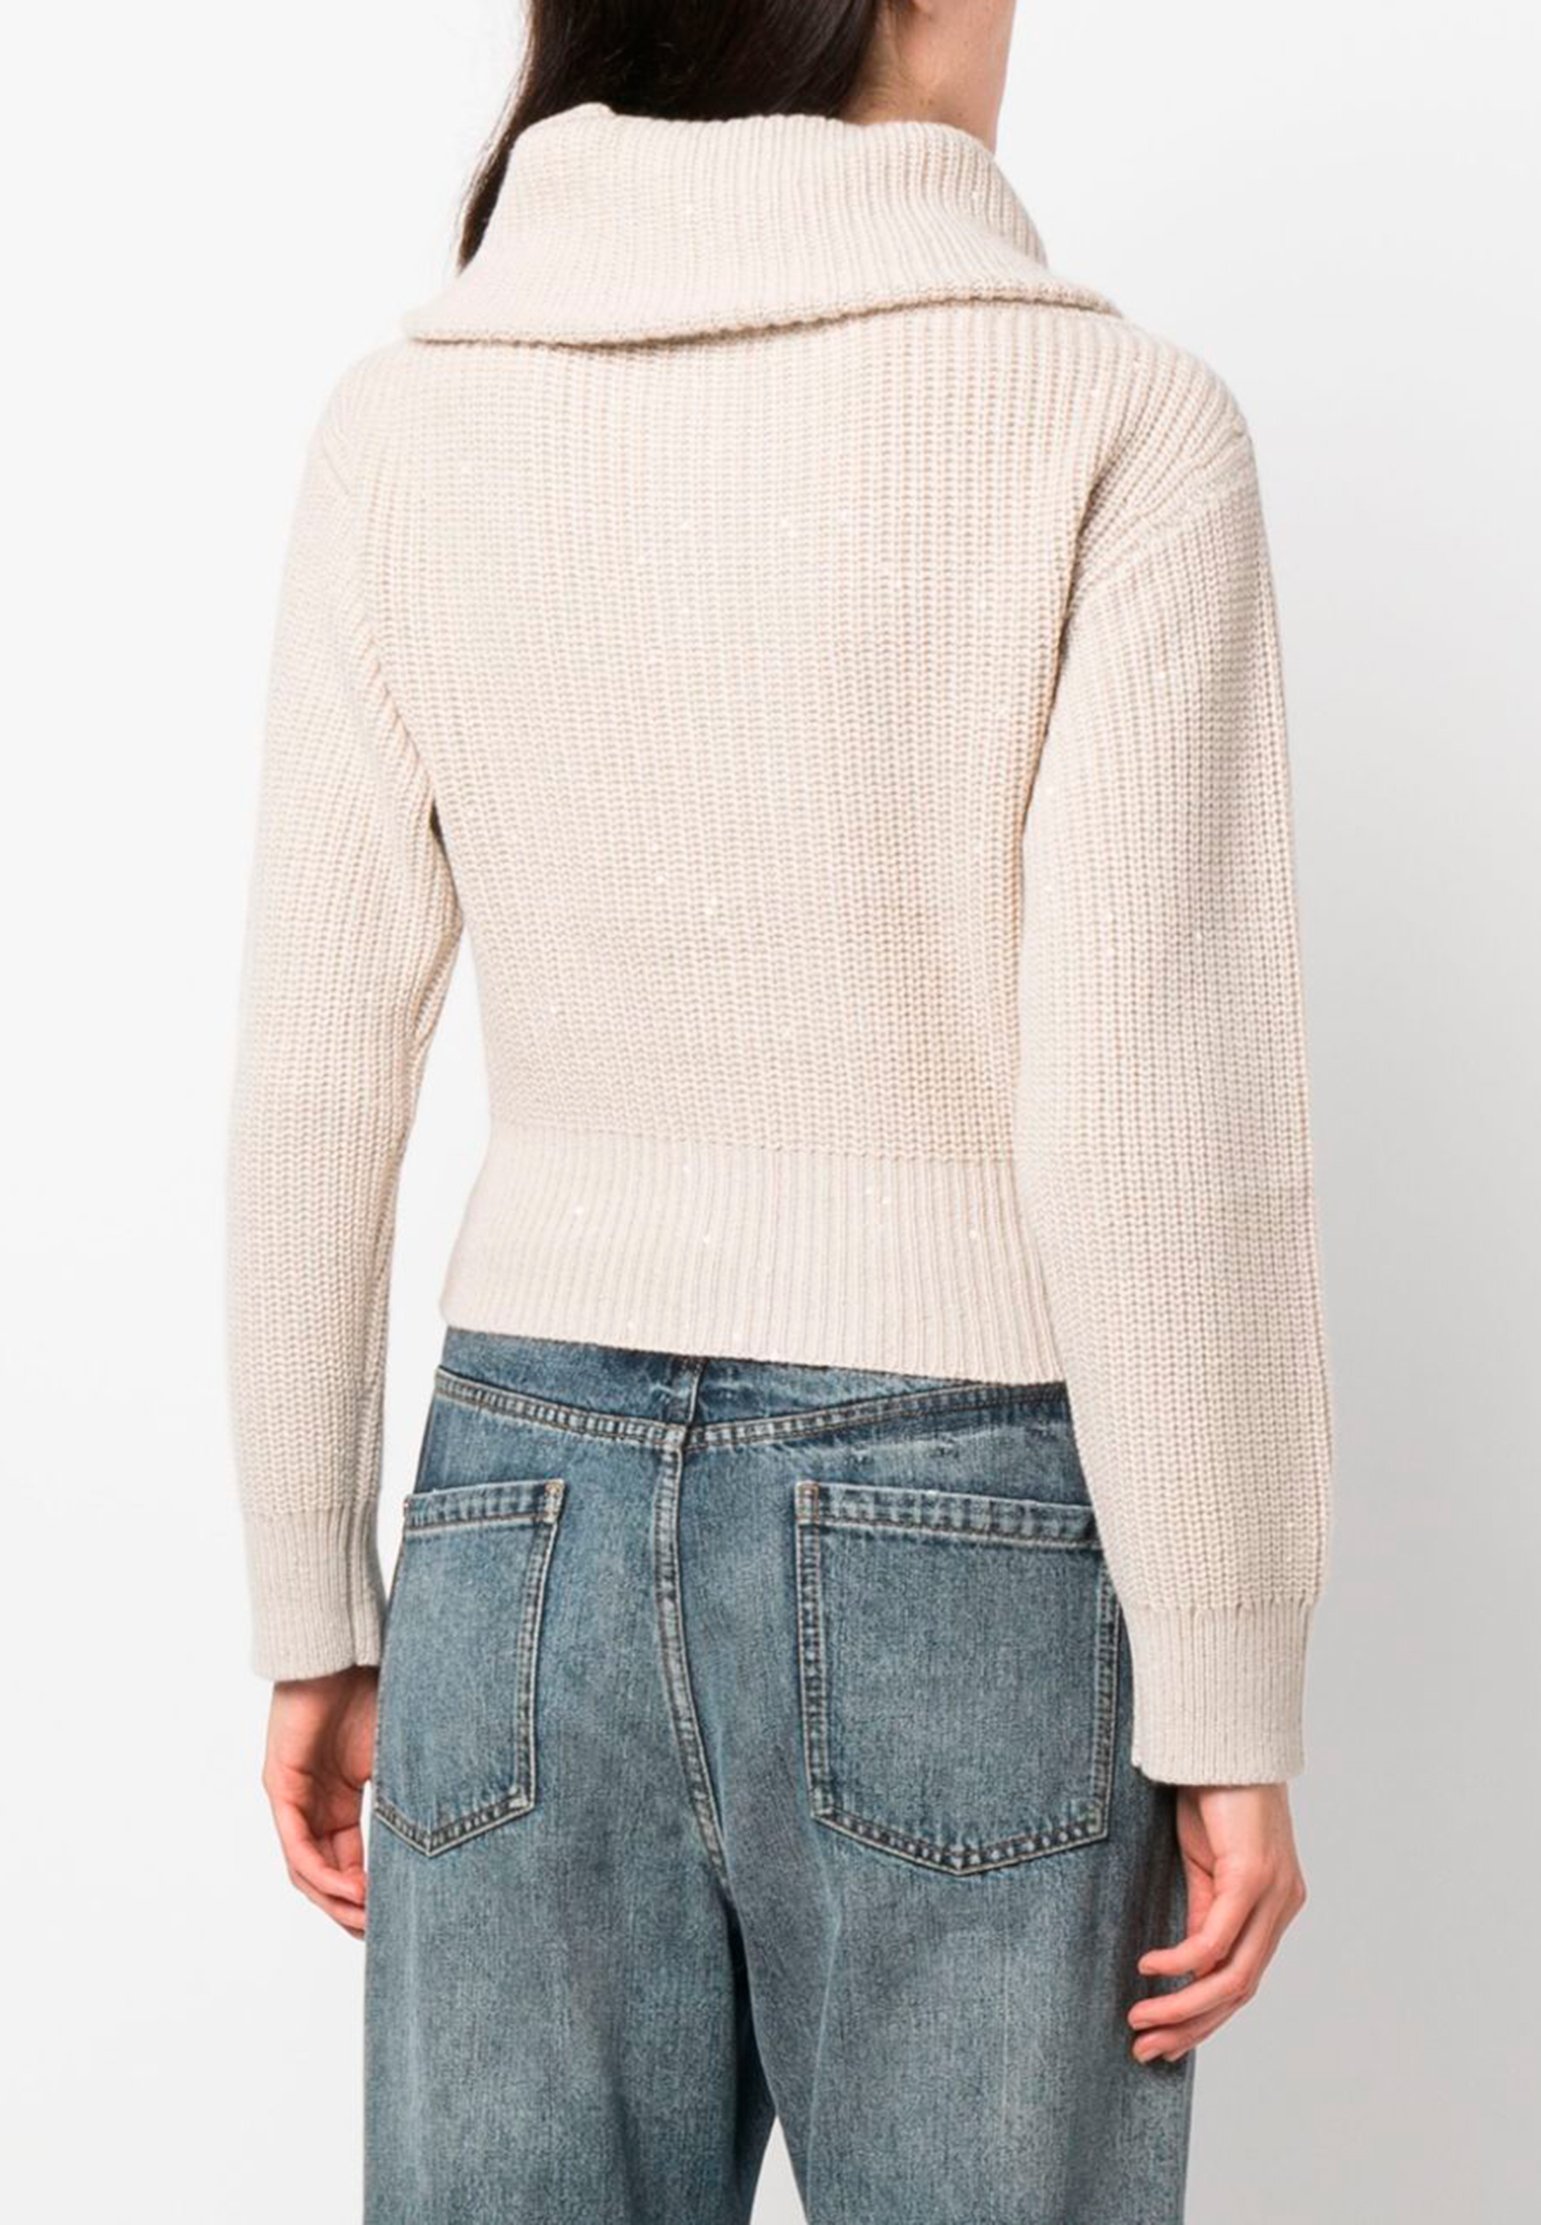 Sweater BRUNELLO CUCINELLI Color: white (Code: 3276) in online store Allure